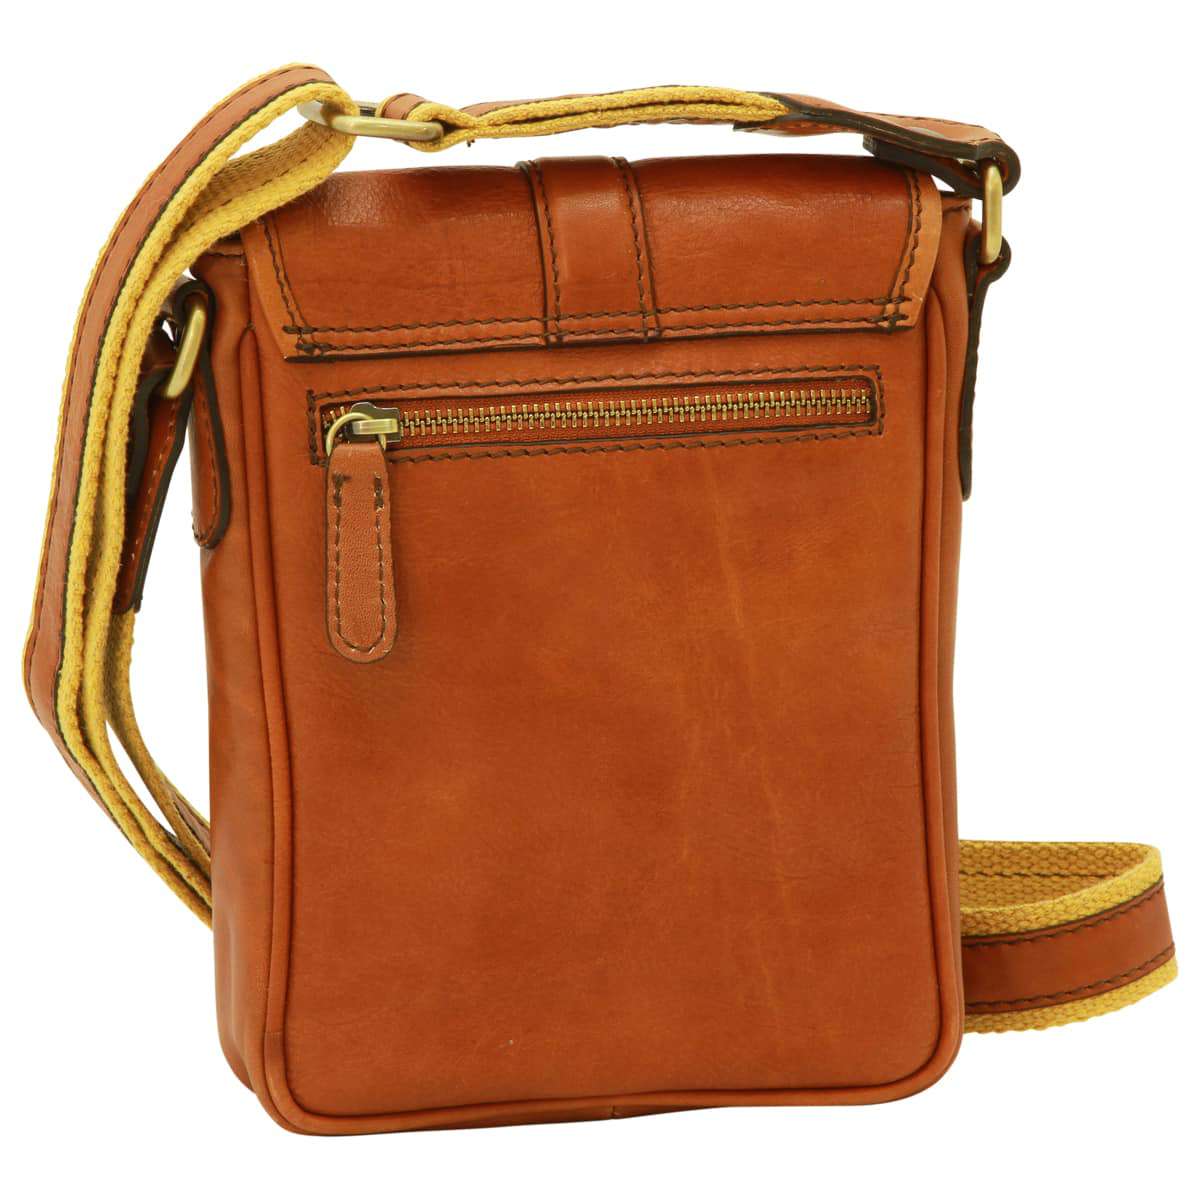 Soft Calfskin Leather Satchel Bag - Gold | 031191CO UK | Old Angler Firenze